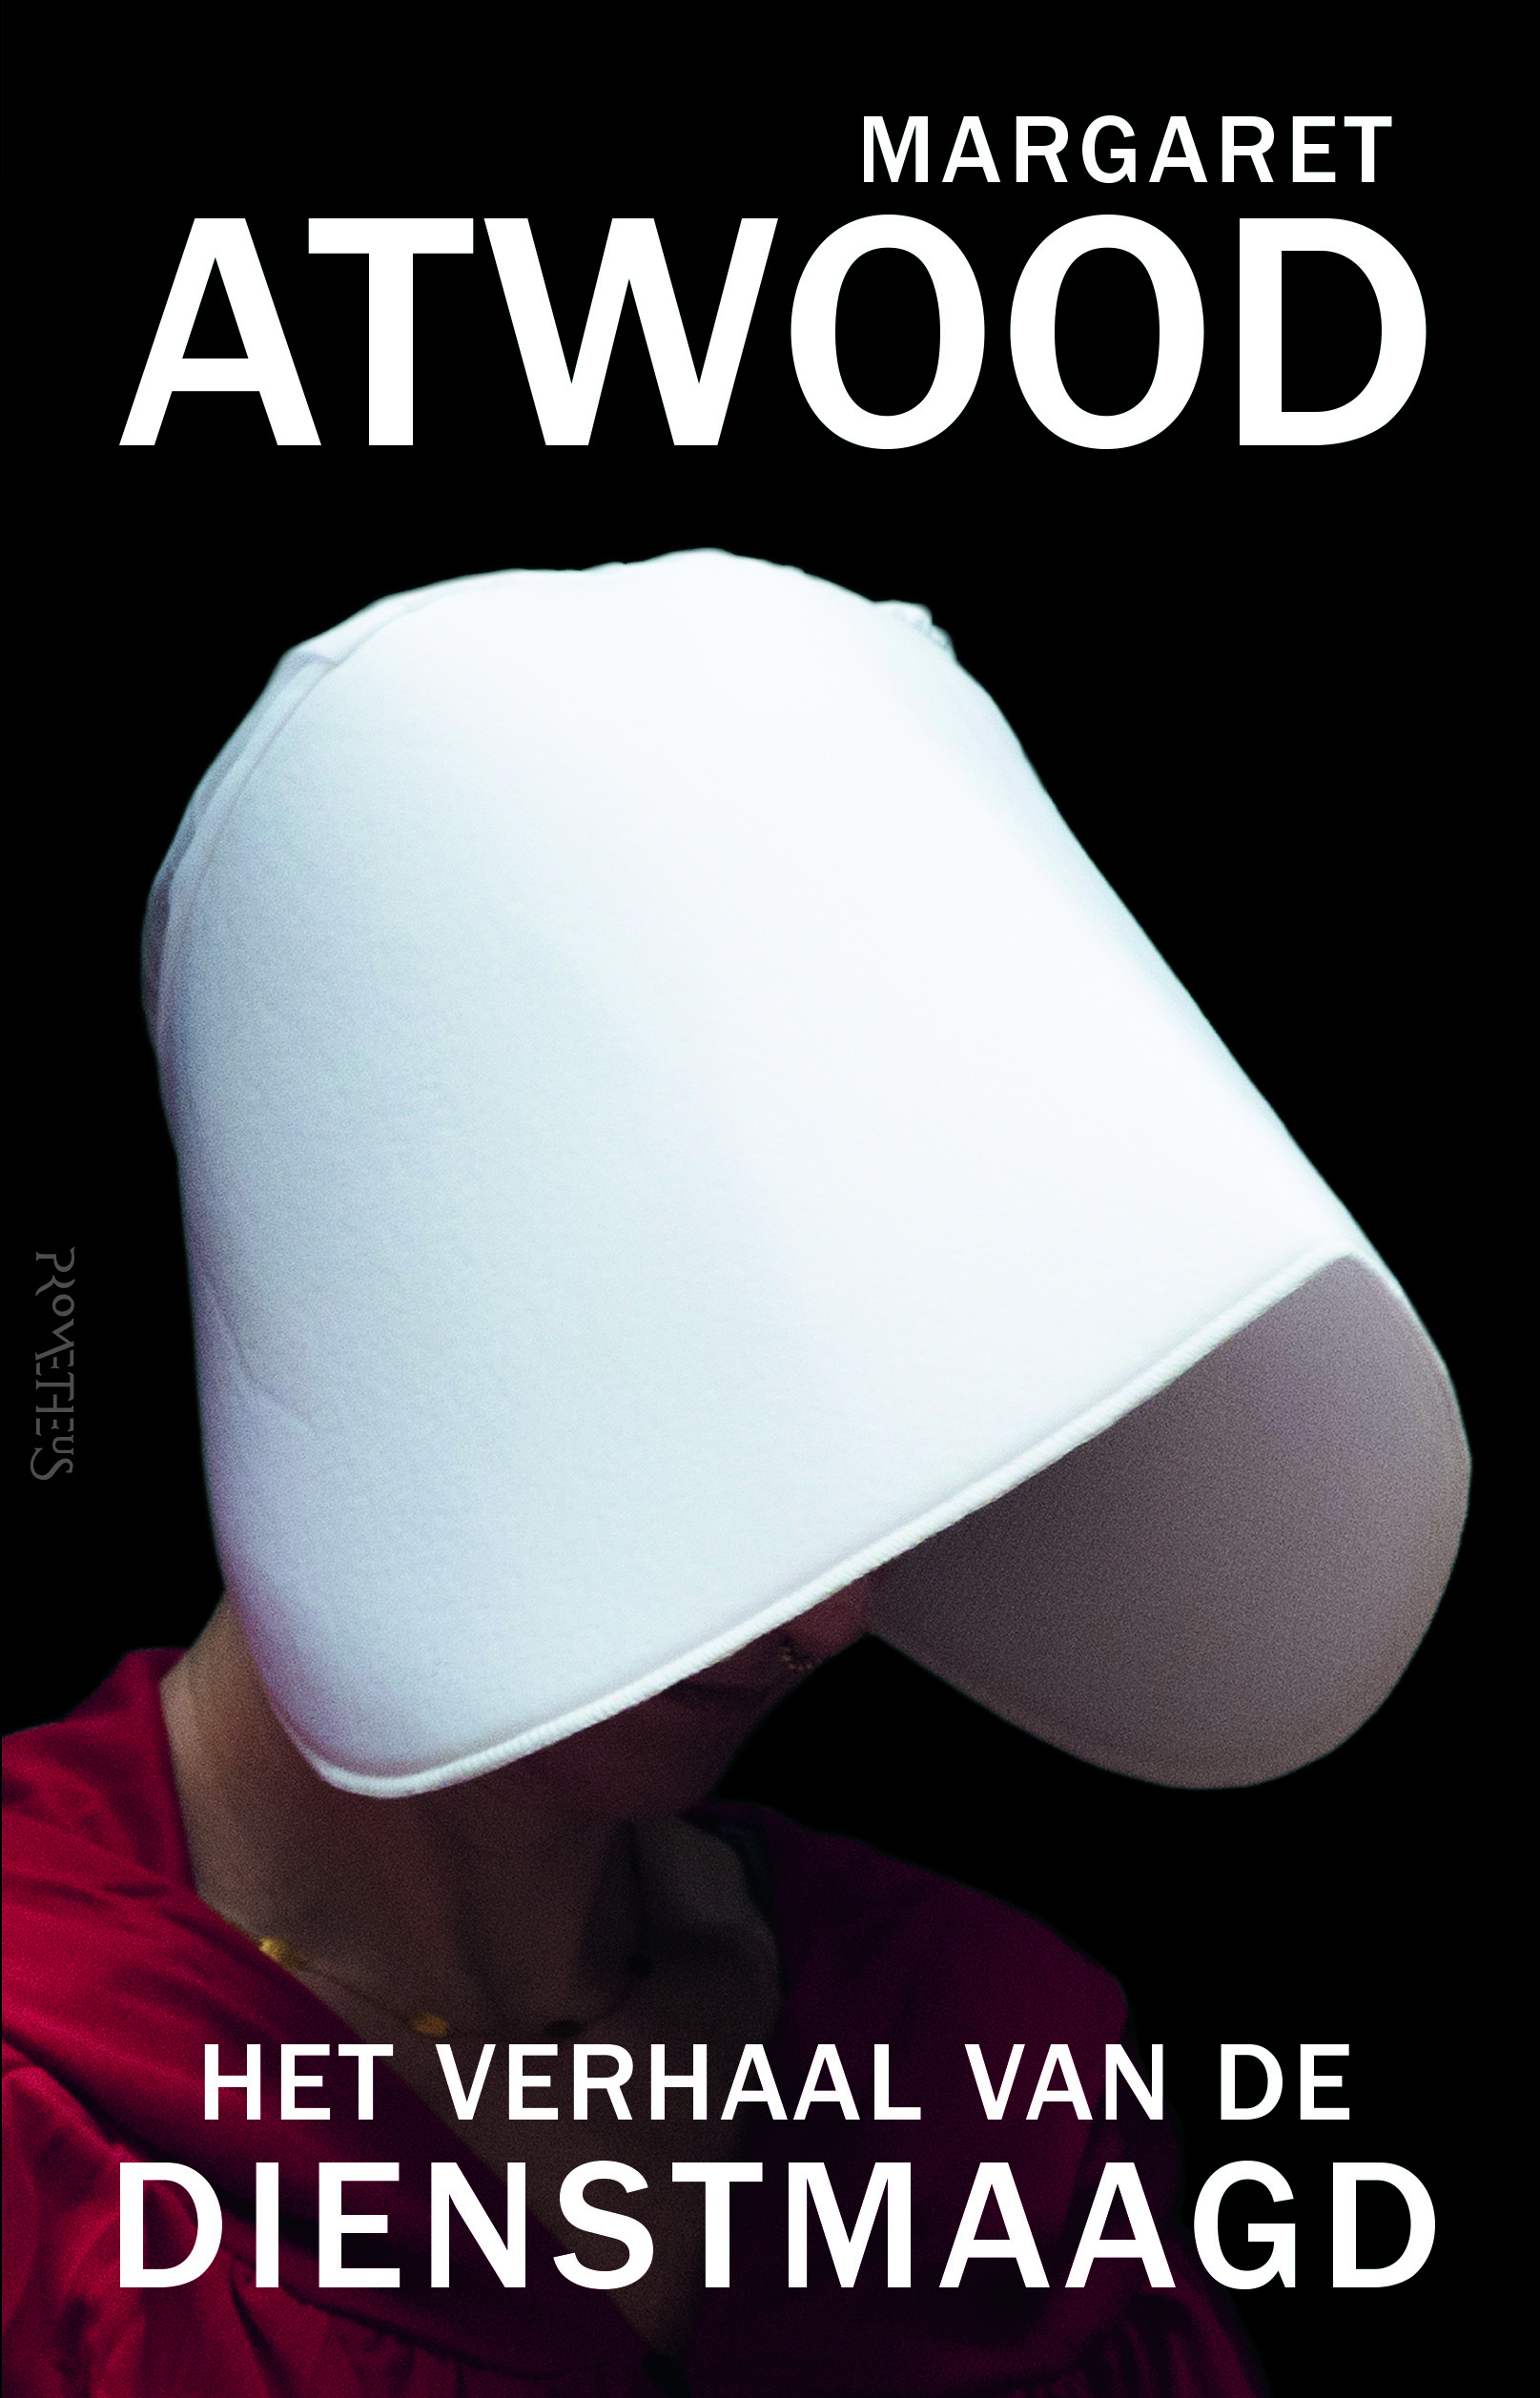 Atwood-Het verhaal van de dienstmaagd@12.indd